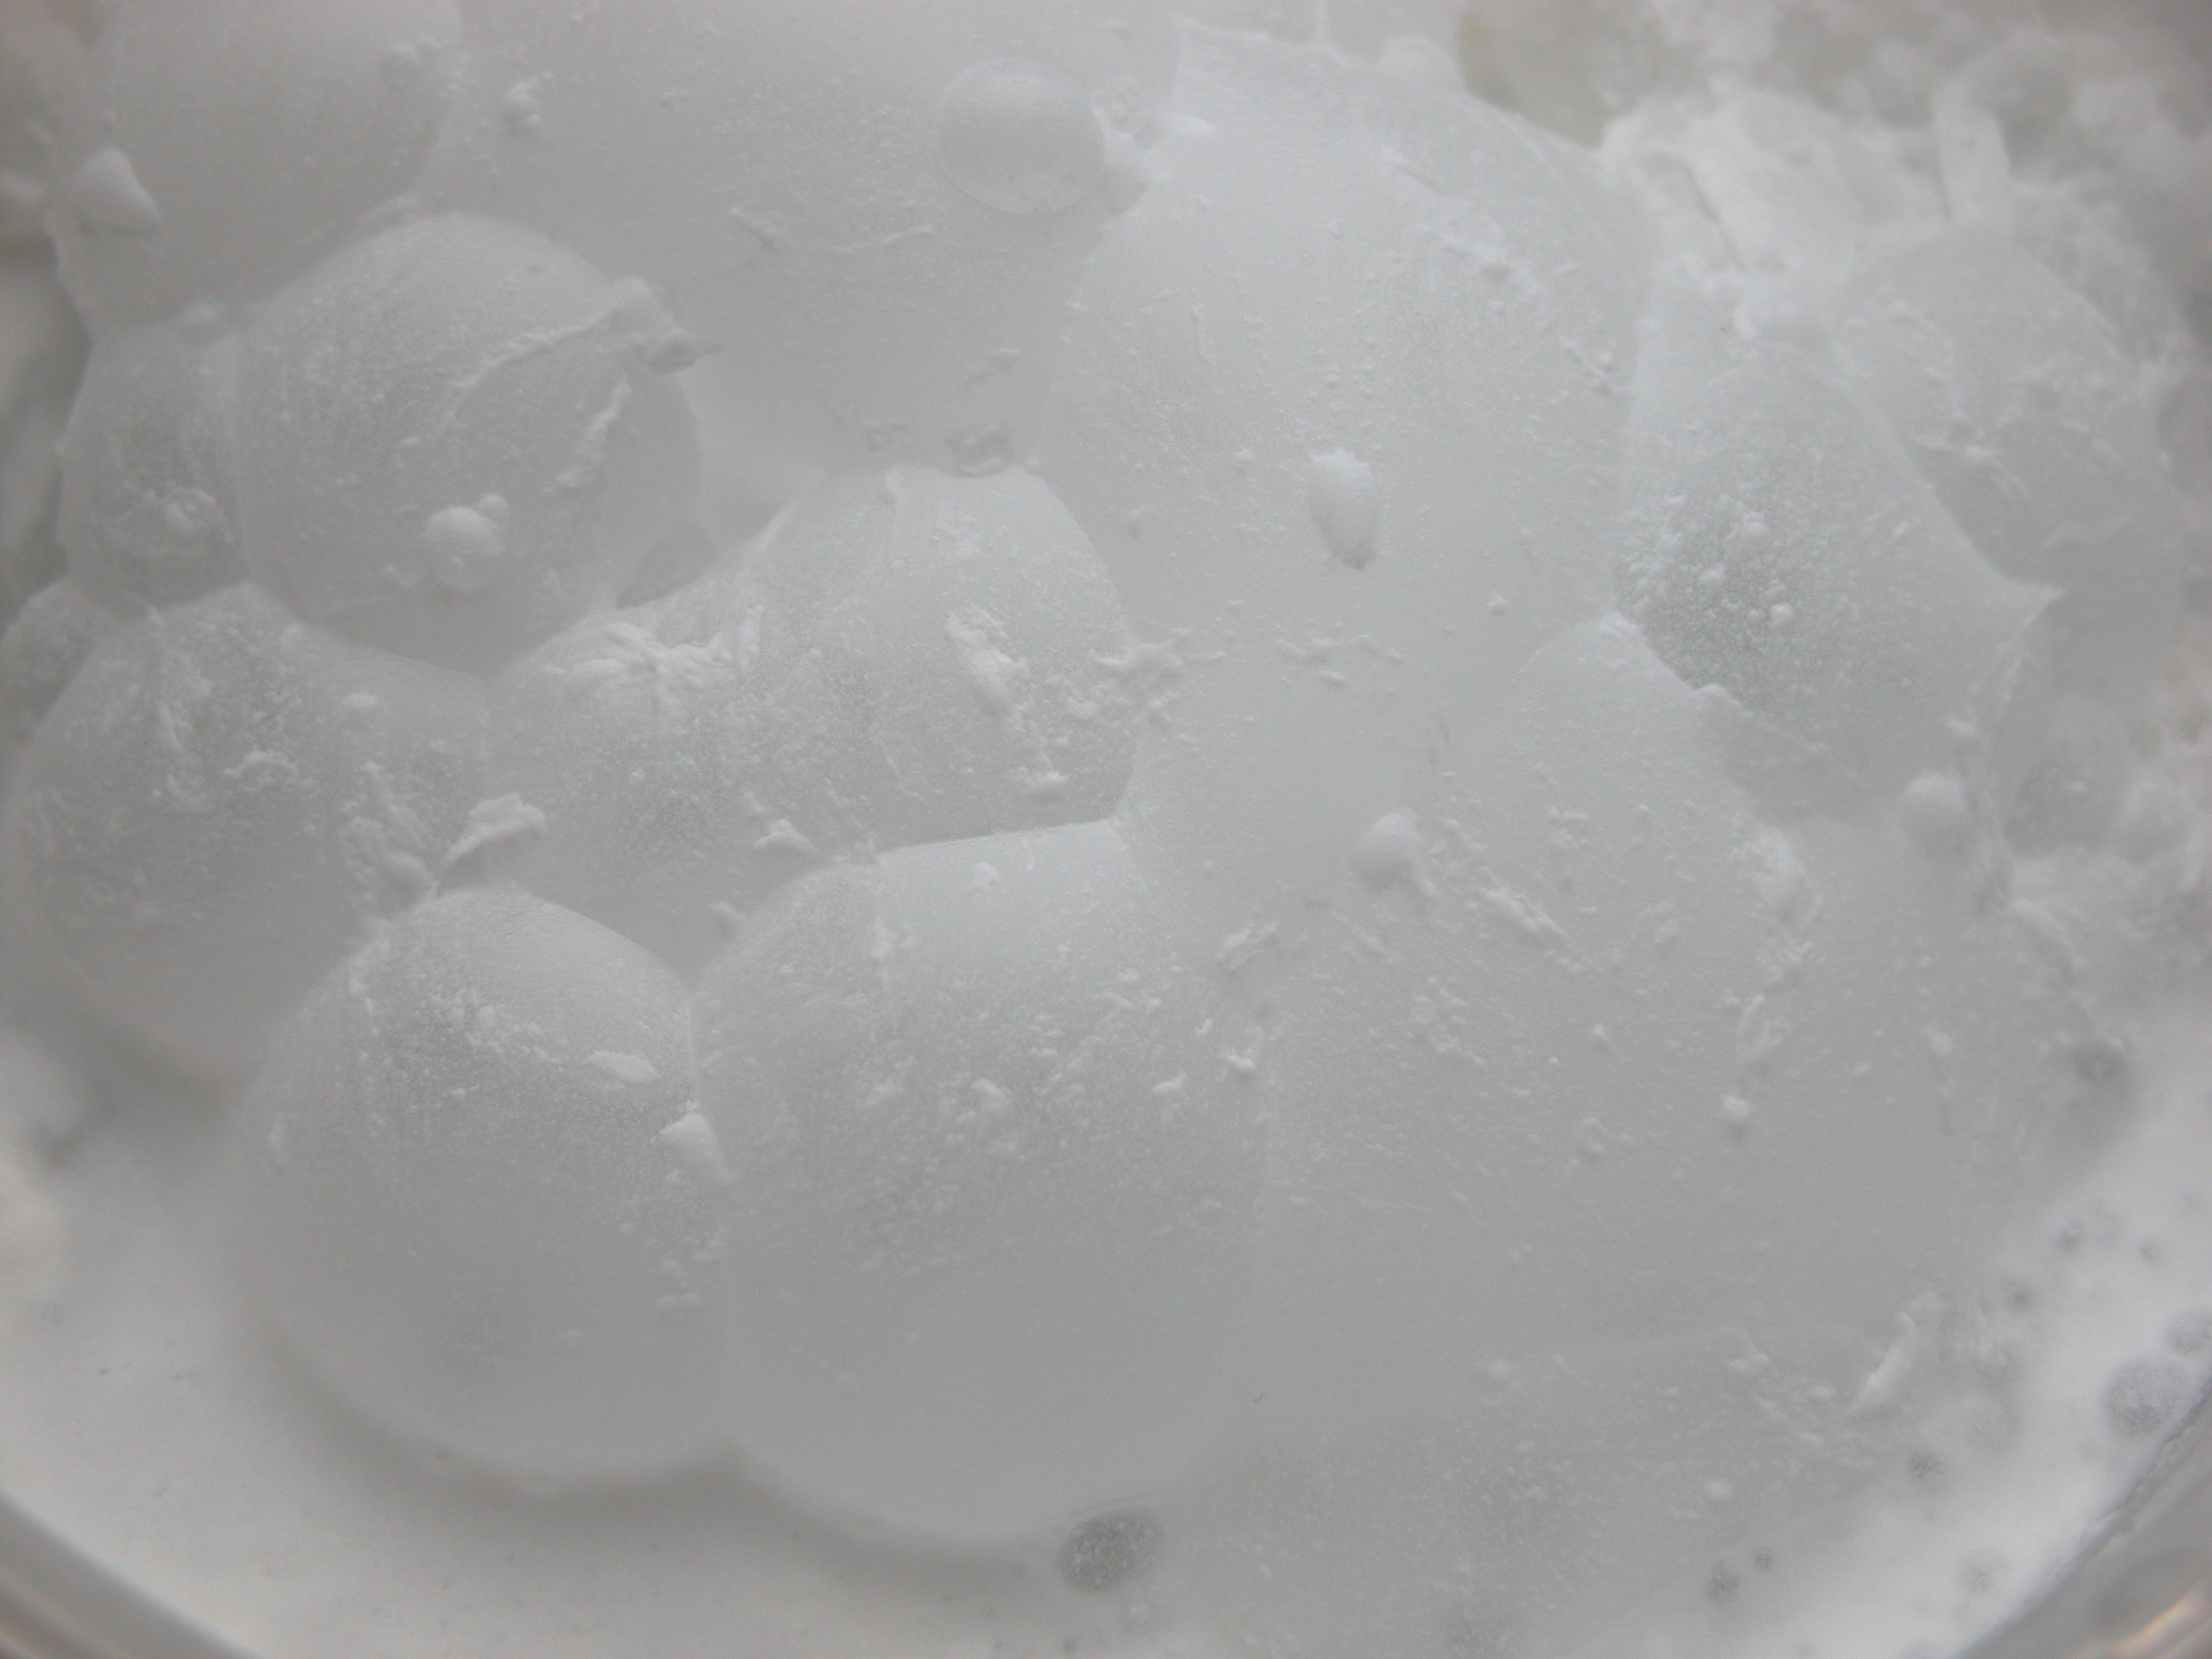 bubbles in milk (?) white